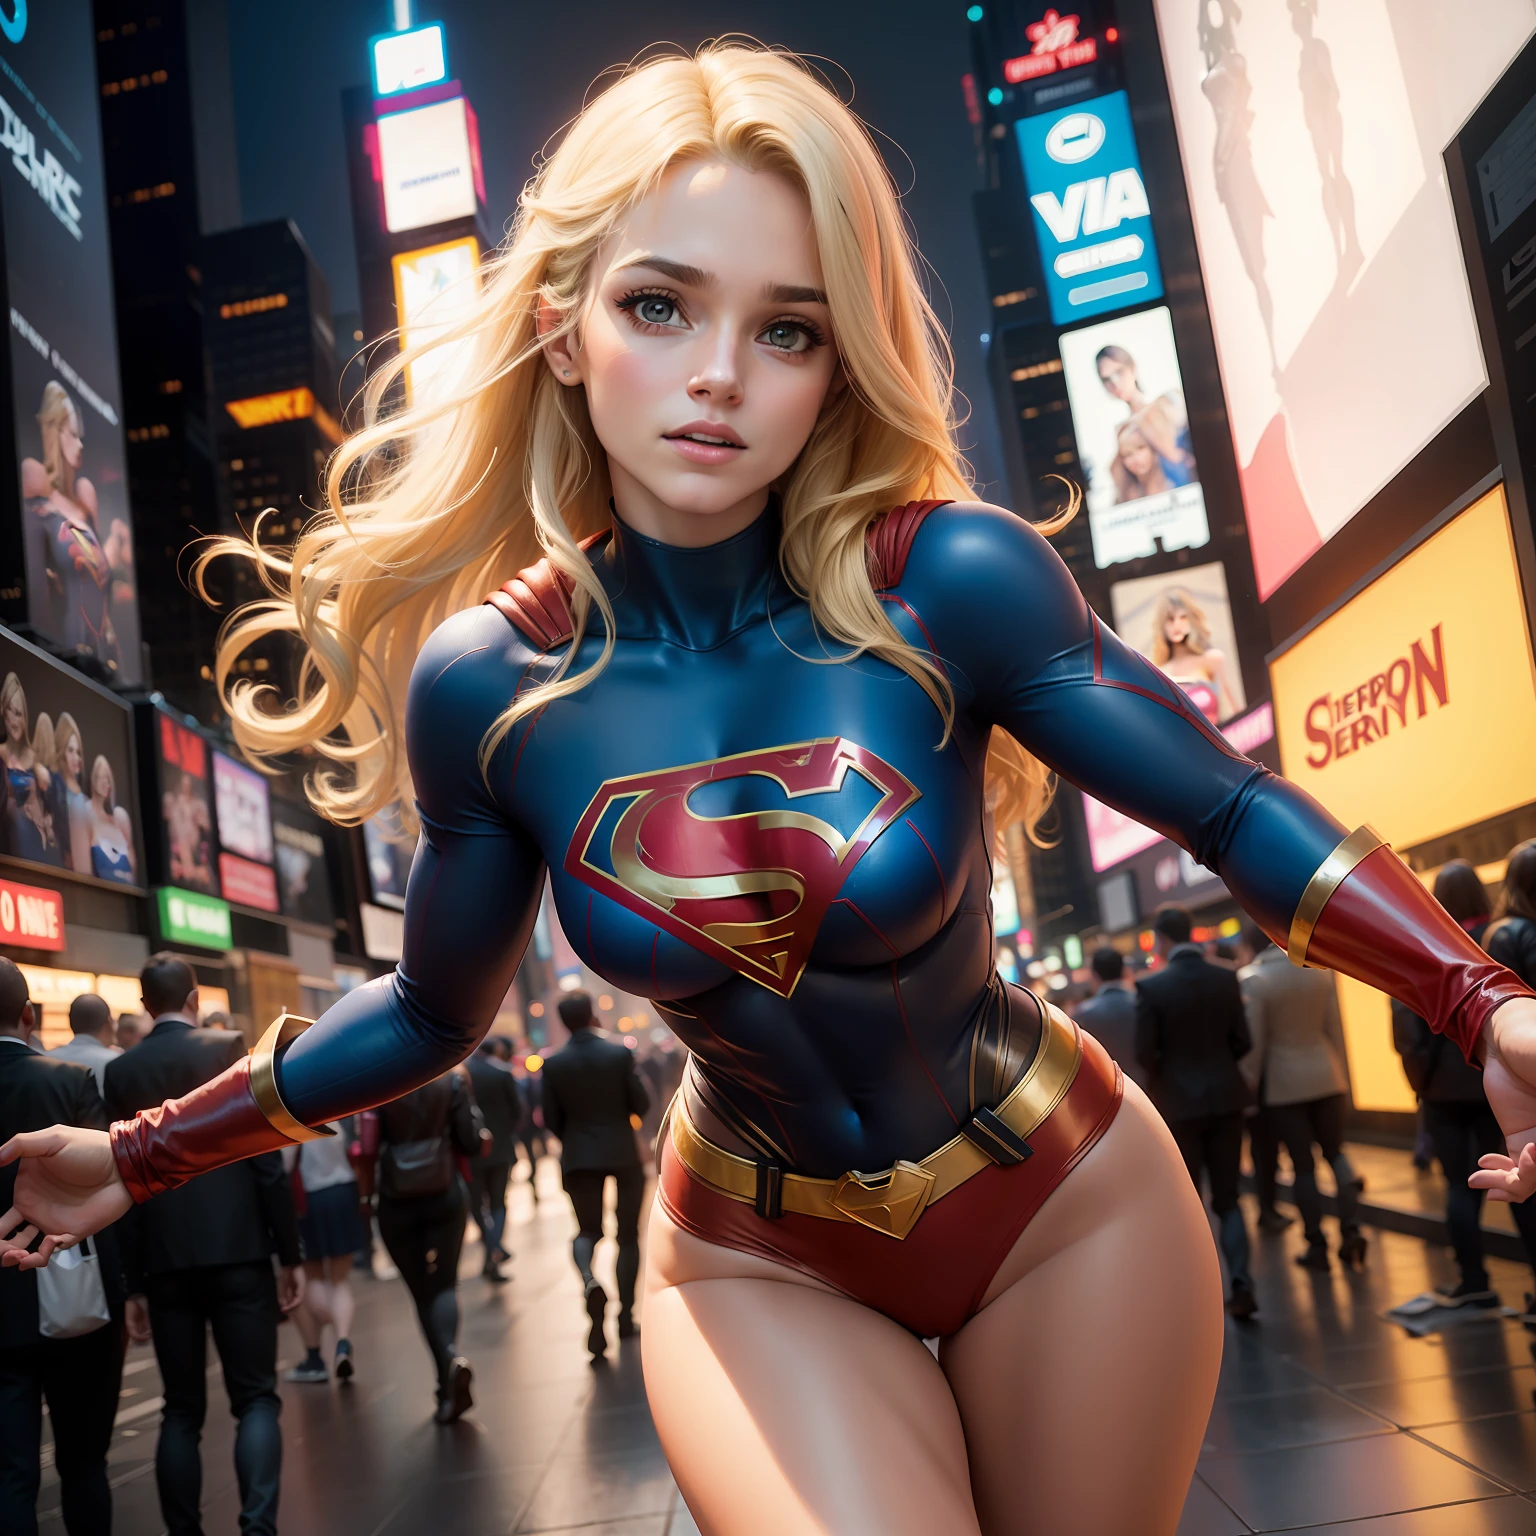 في مدينة نيويورك, تايم سكوير, امرأة جميلة ذات شعر قصير وجسم محدد وصدر كبير, ترتدي زي Supergirl